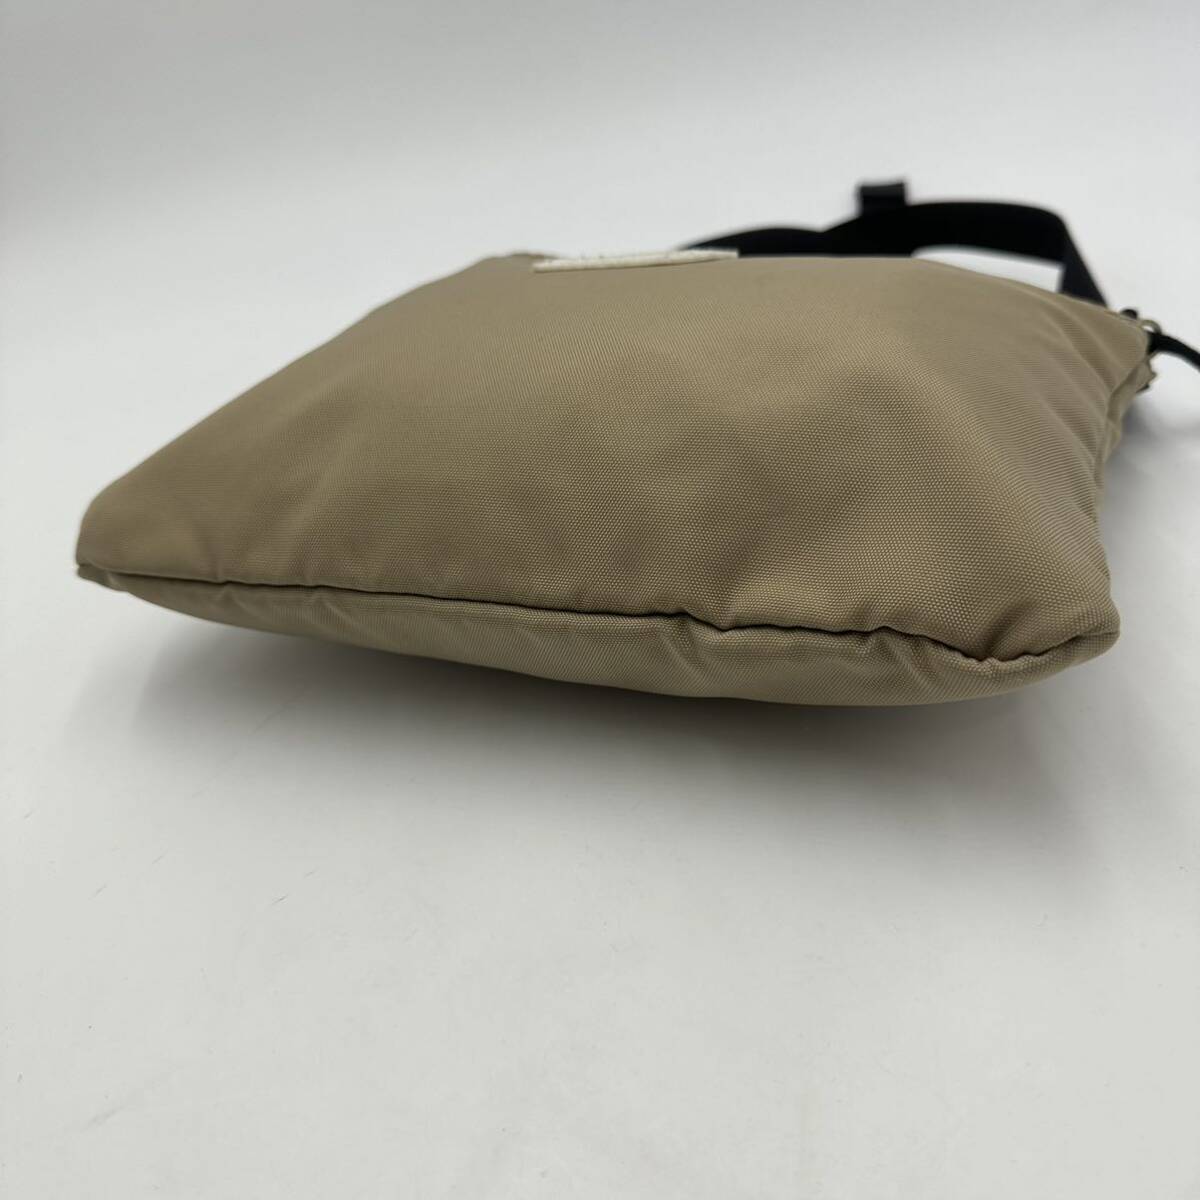 G * superior article / popular model!! \' refined design \' FREDRIK PACKERS Fredric paker z Cross body shoulder bag pochette bag 